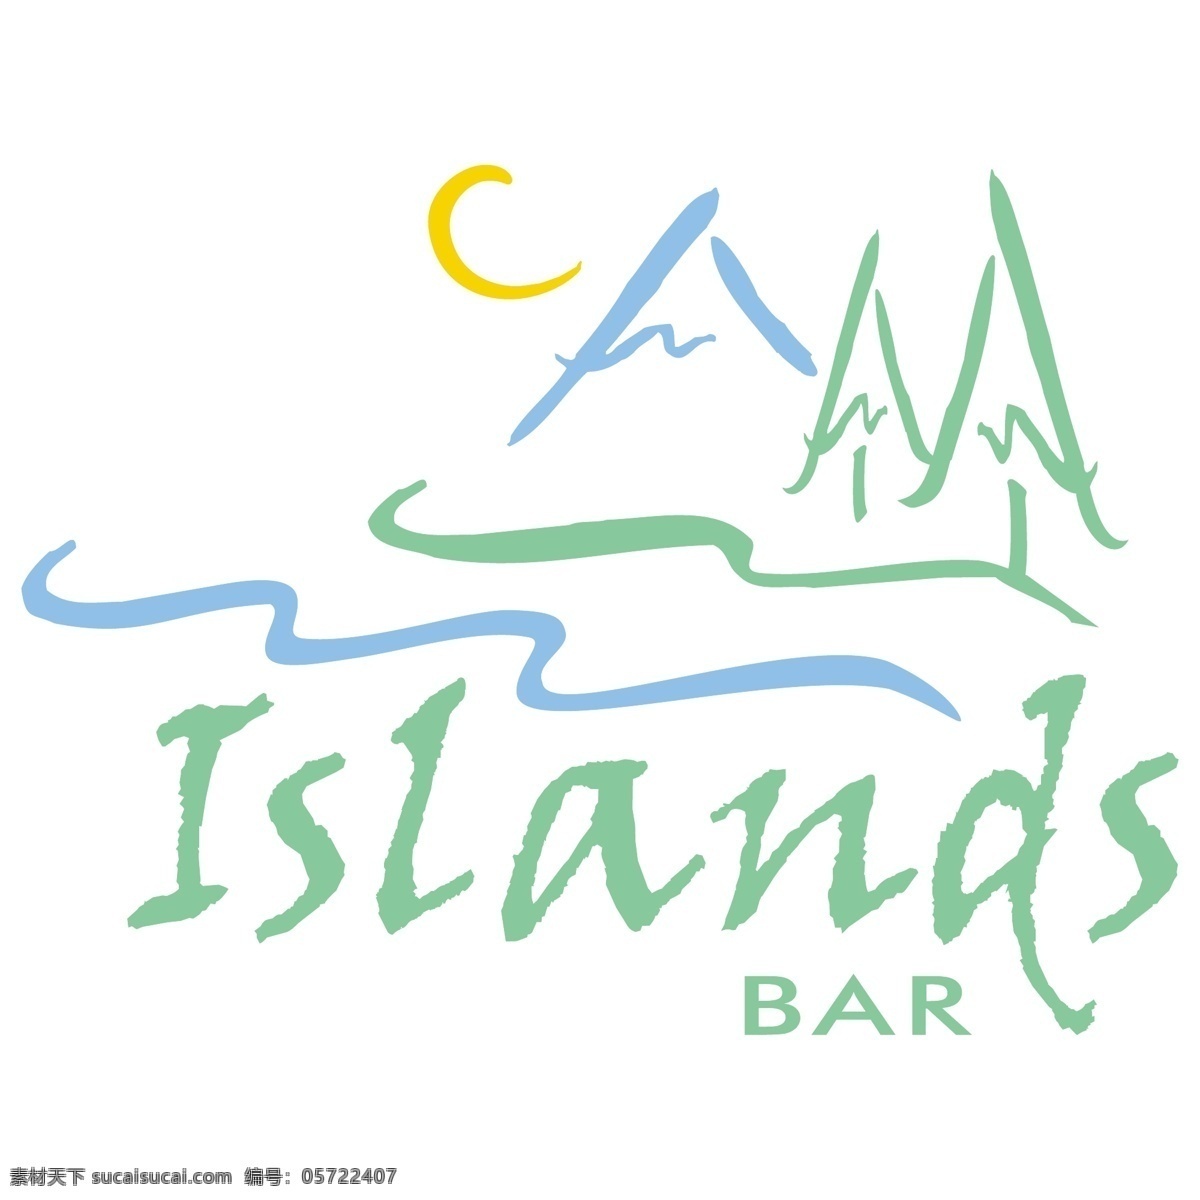 岛 酒吧 自由 标识 标志 psd源文件 logo设计